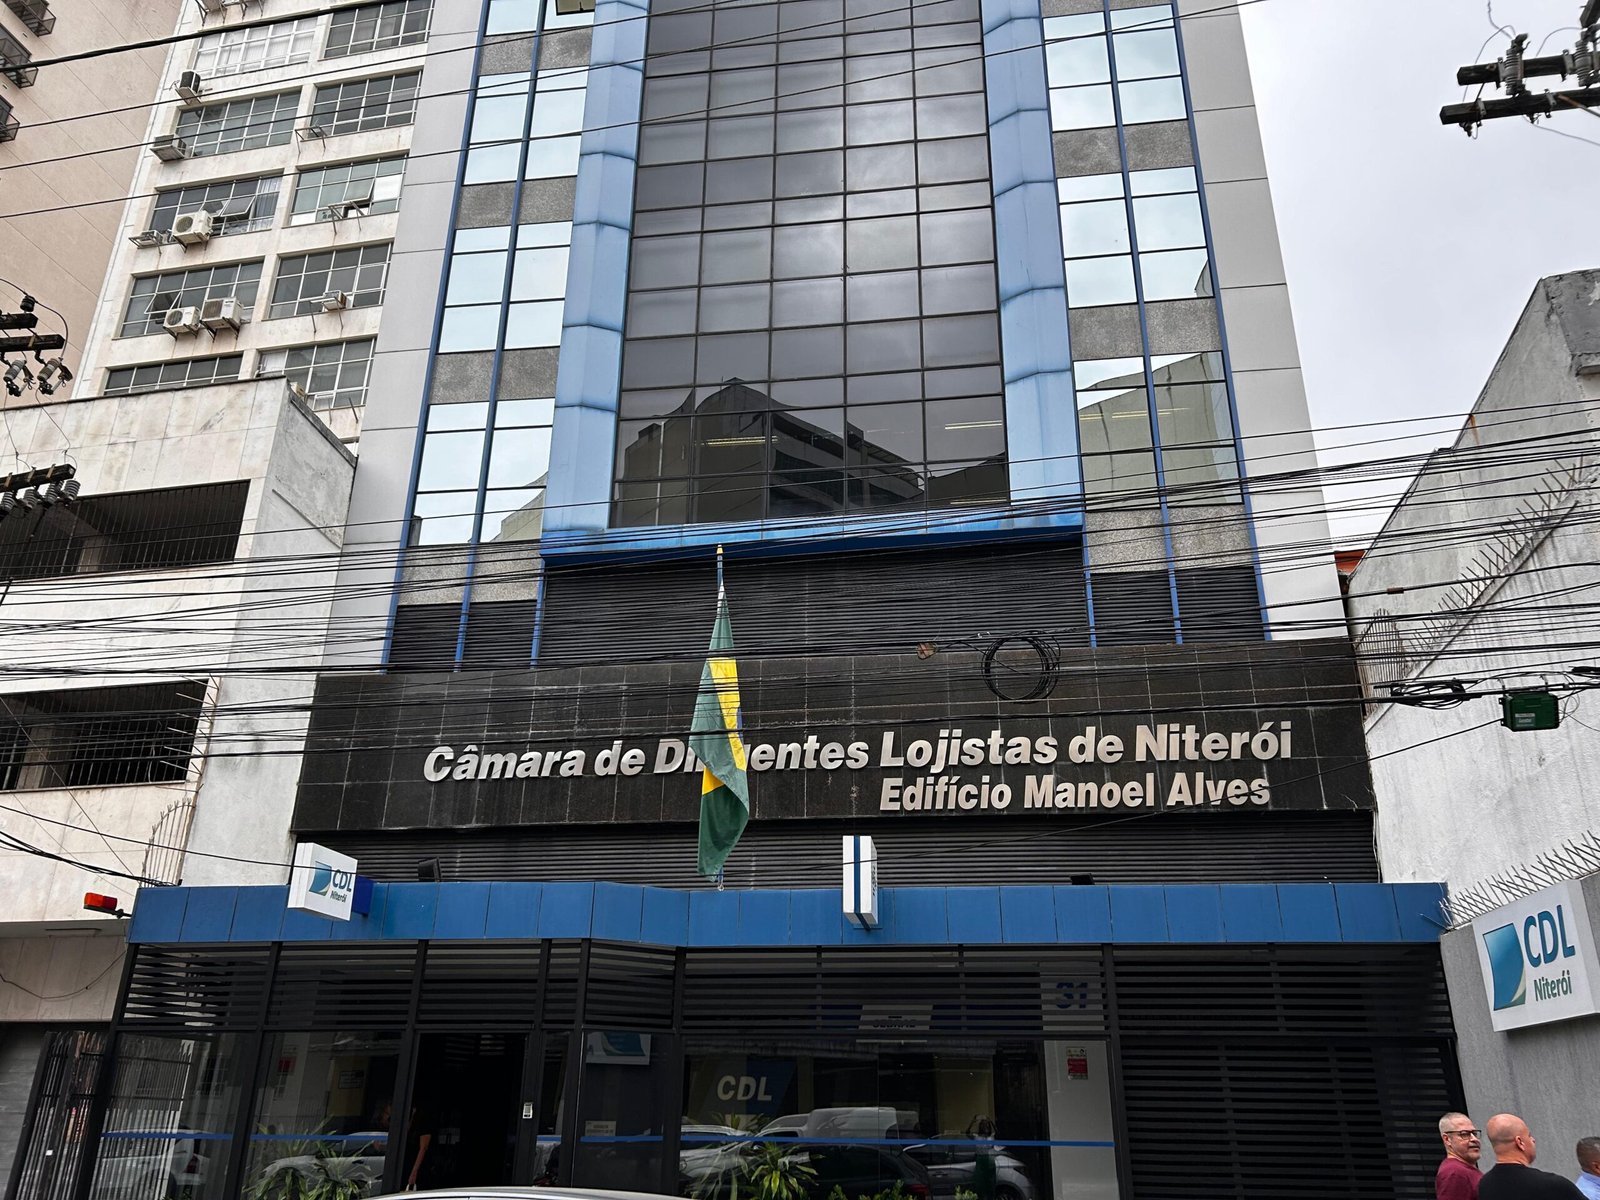 CDL Niterói relembra conquistas e anuncia novidades